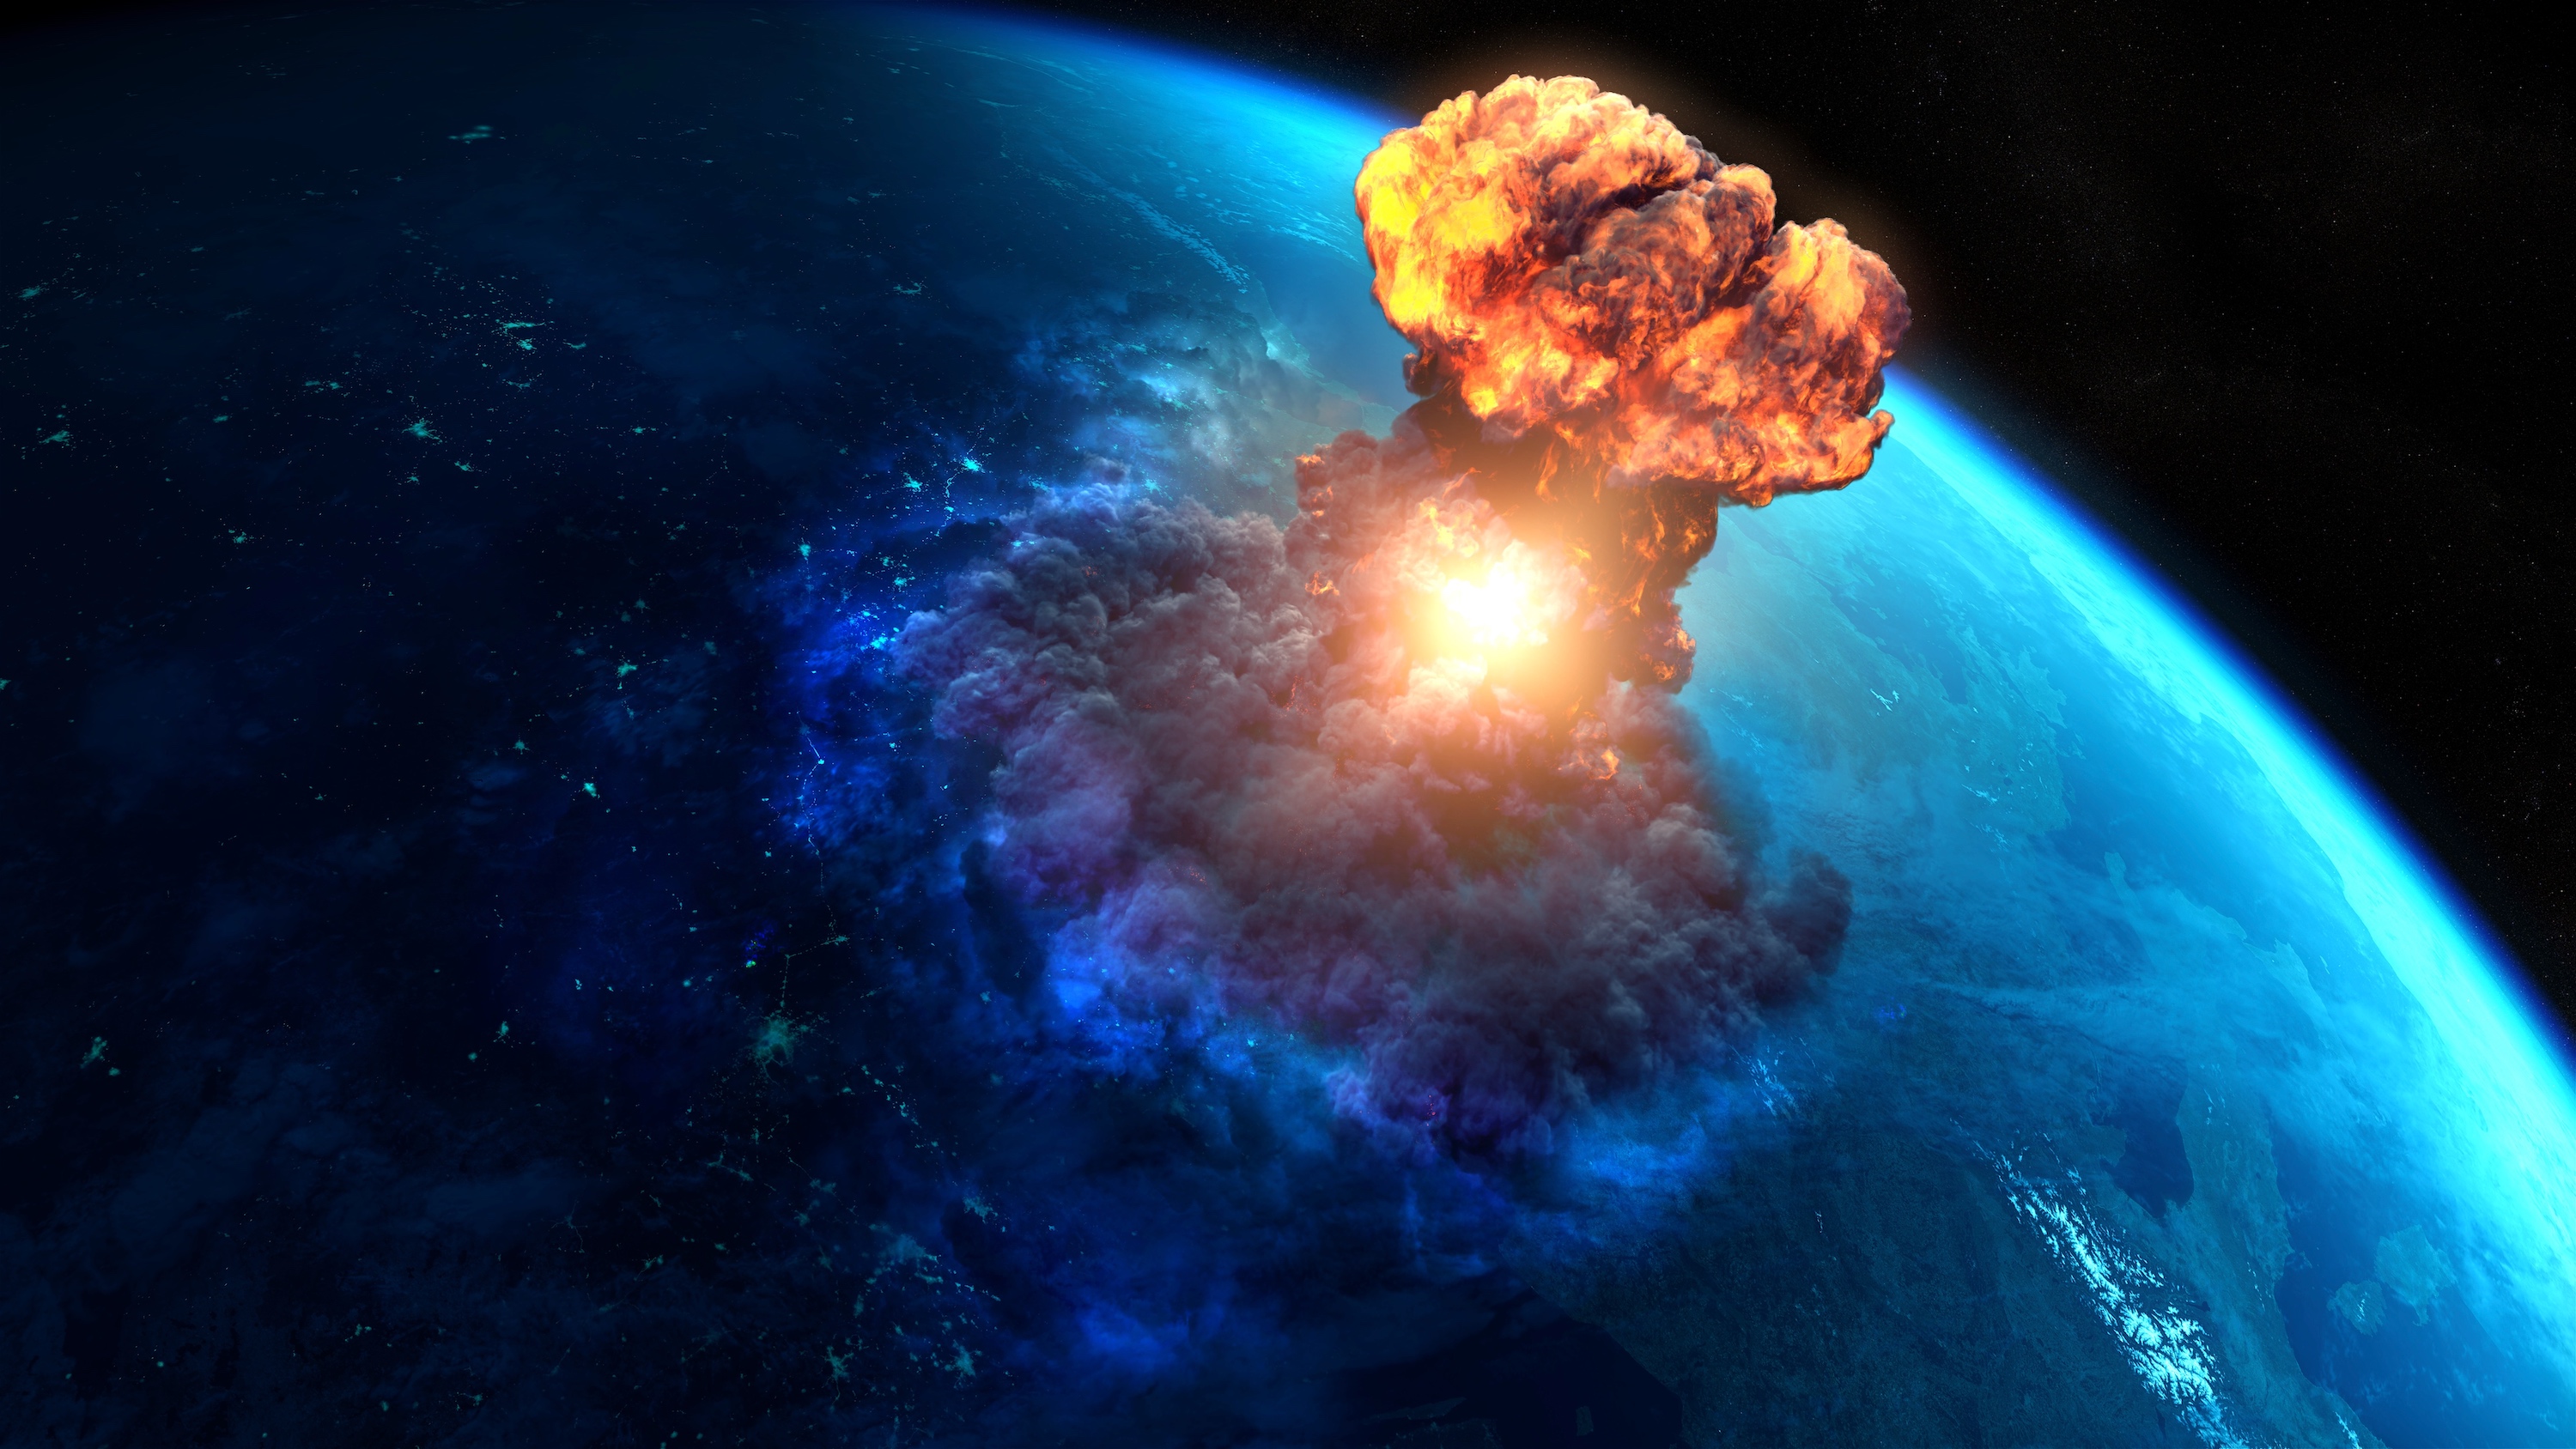 Comment empêcher la collision d'un astéroïde ? © Celafon, Adobe Stock